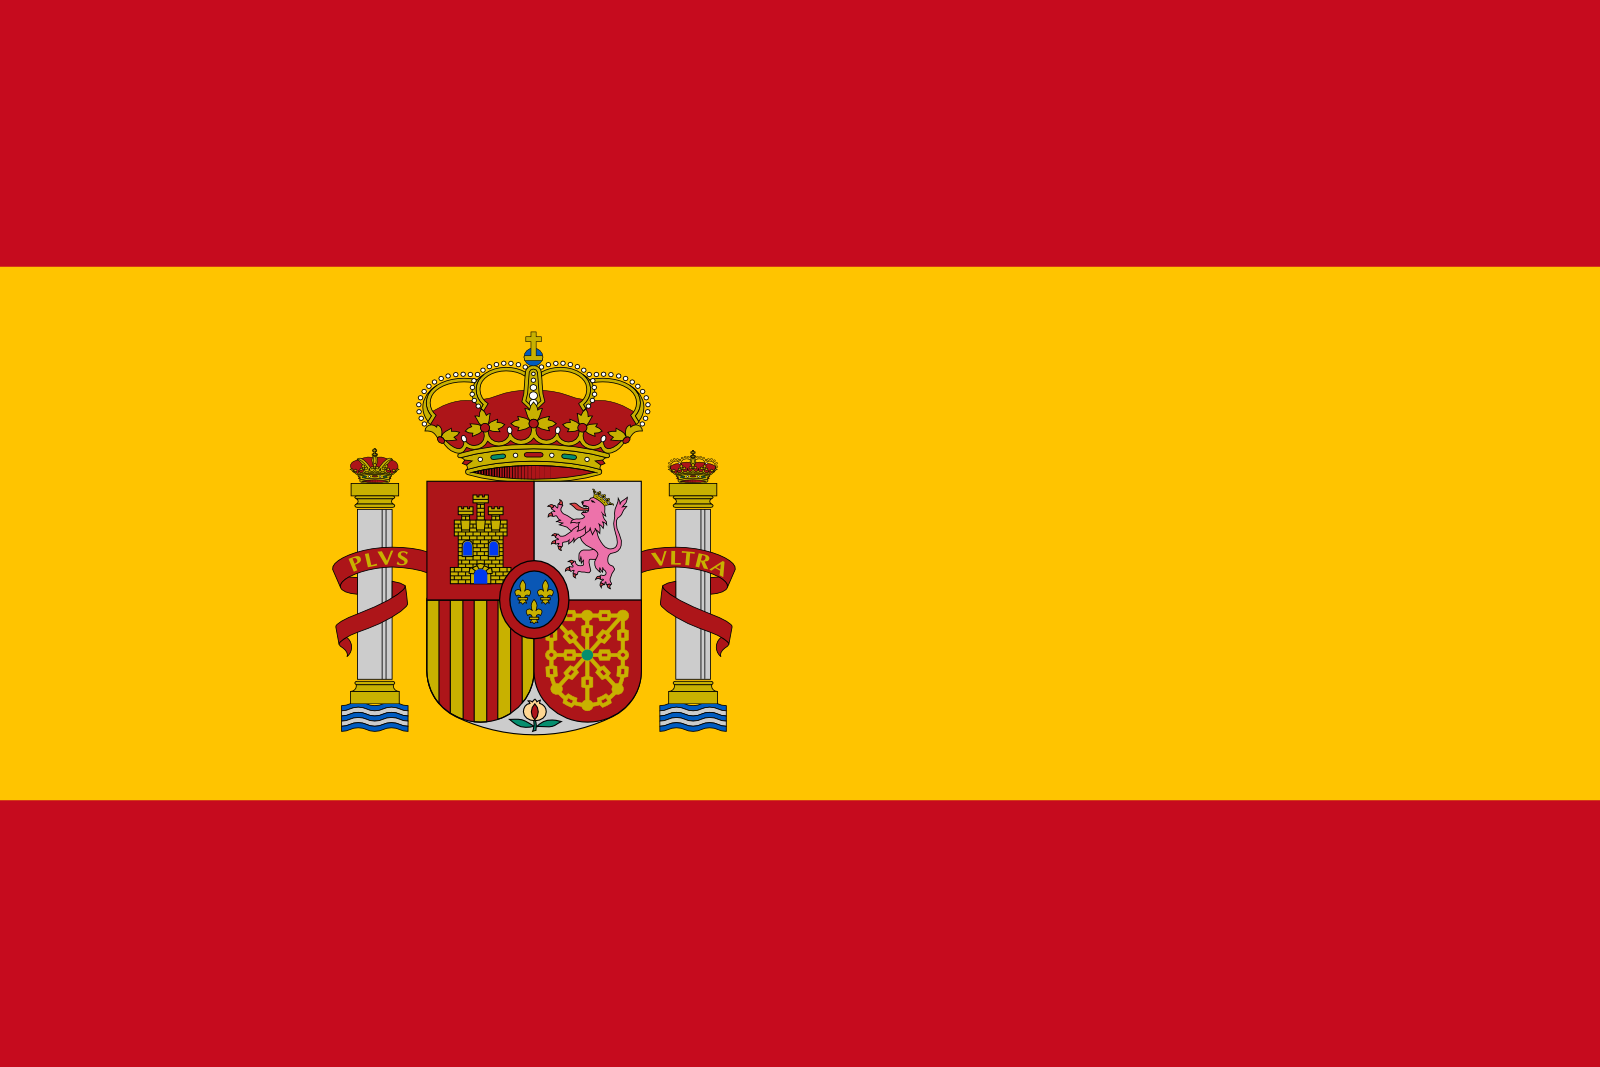 Spaniens Flagge